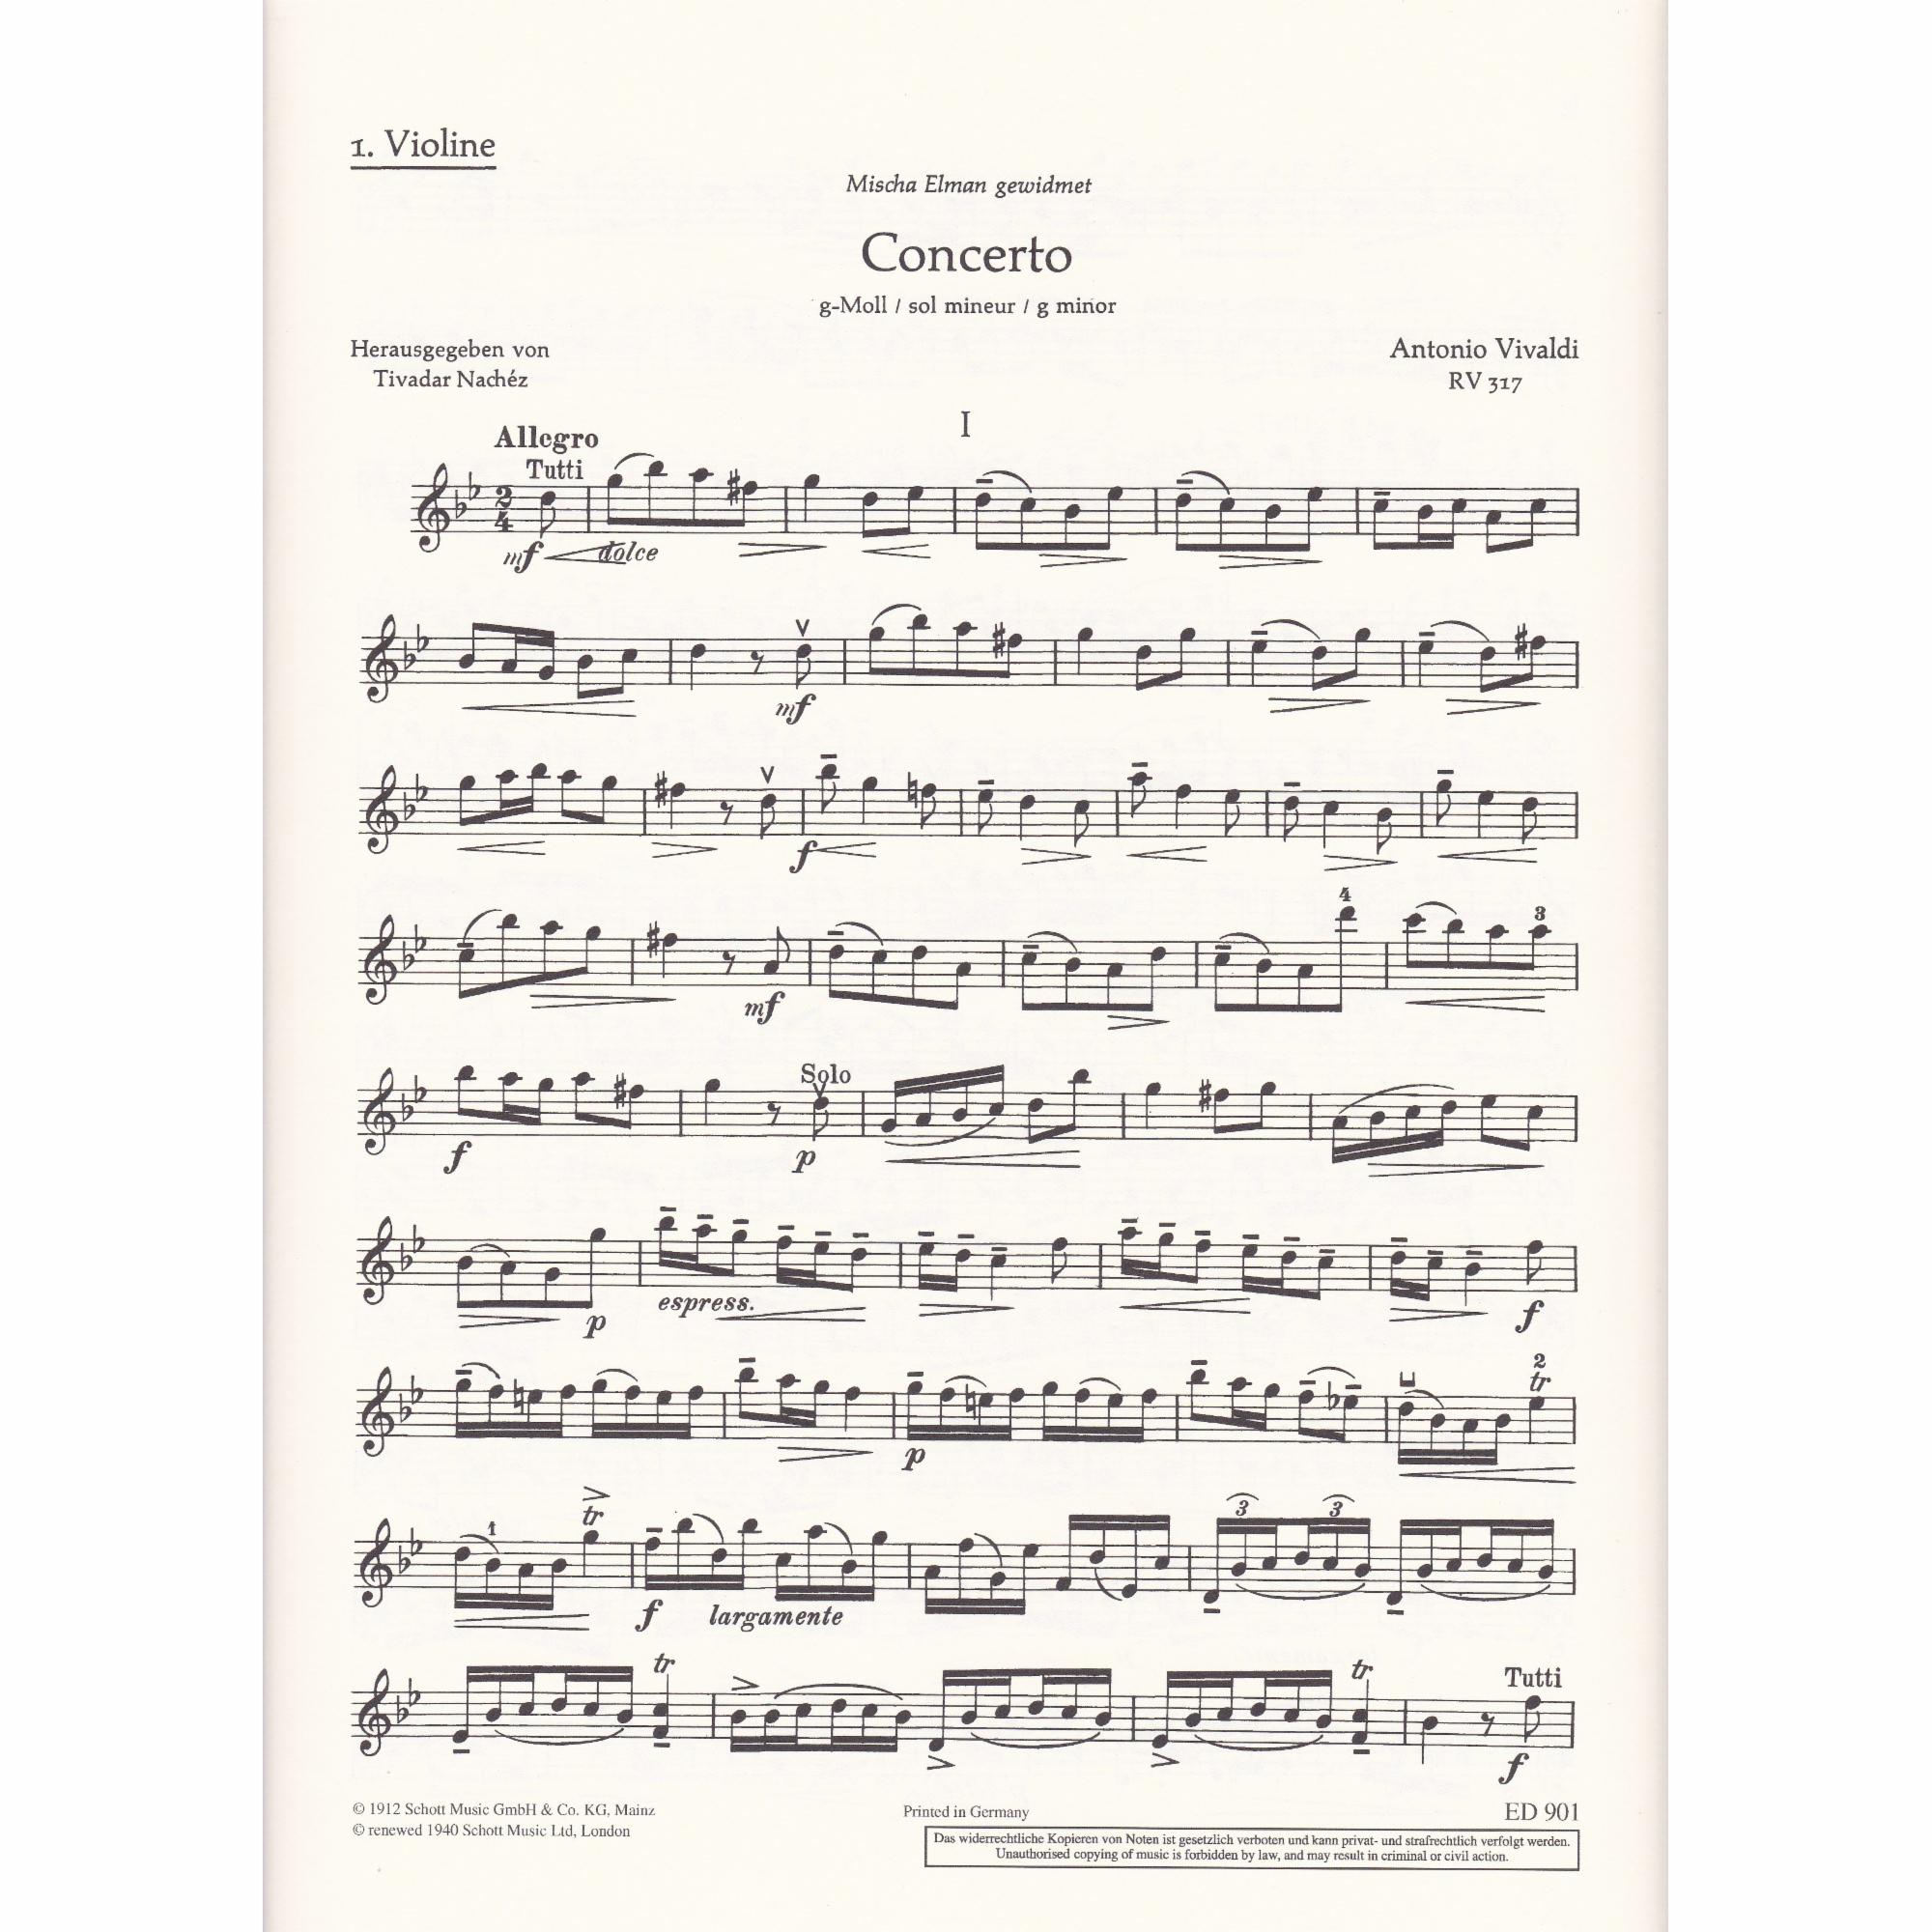 Violin Concerto in G Minor, Op. 12, No. 1 